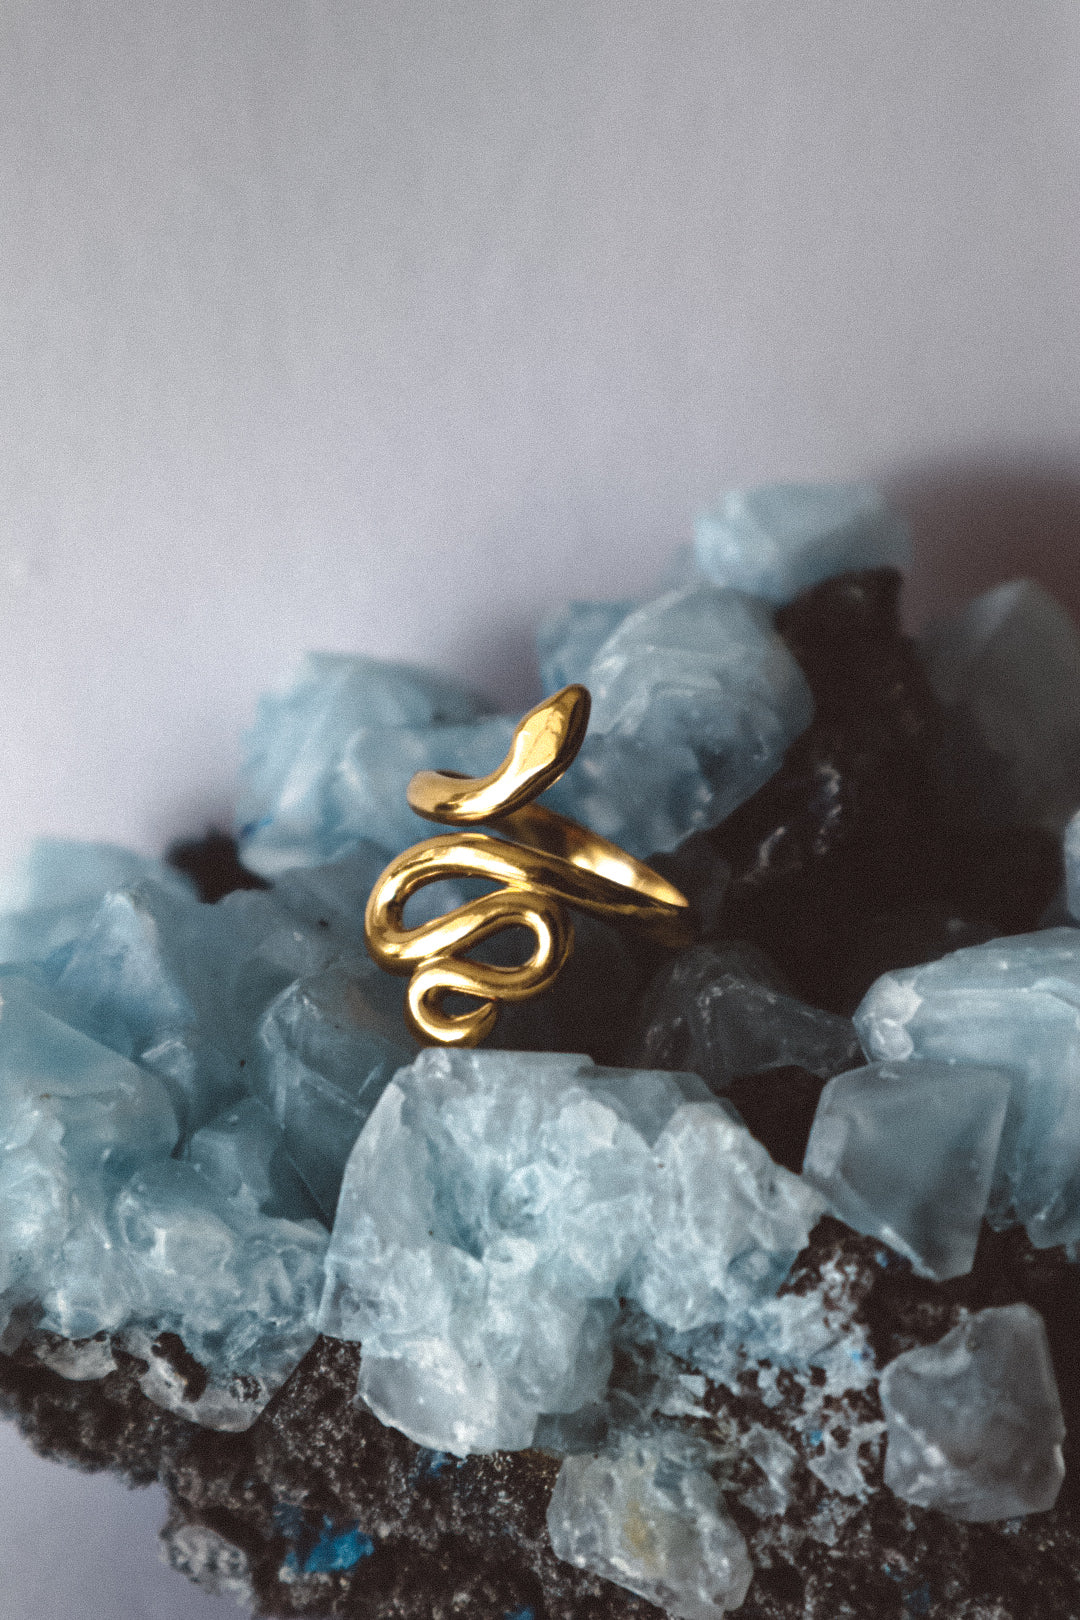 SLITHER Snake Ring Adjustable Gold